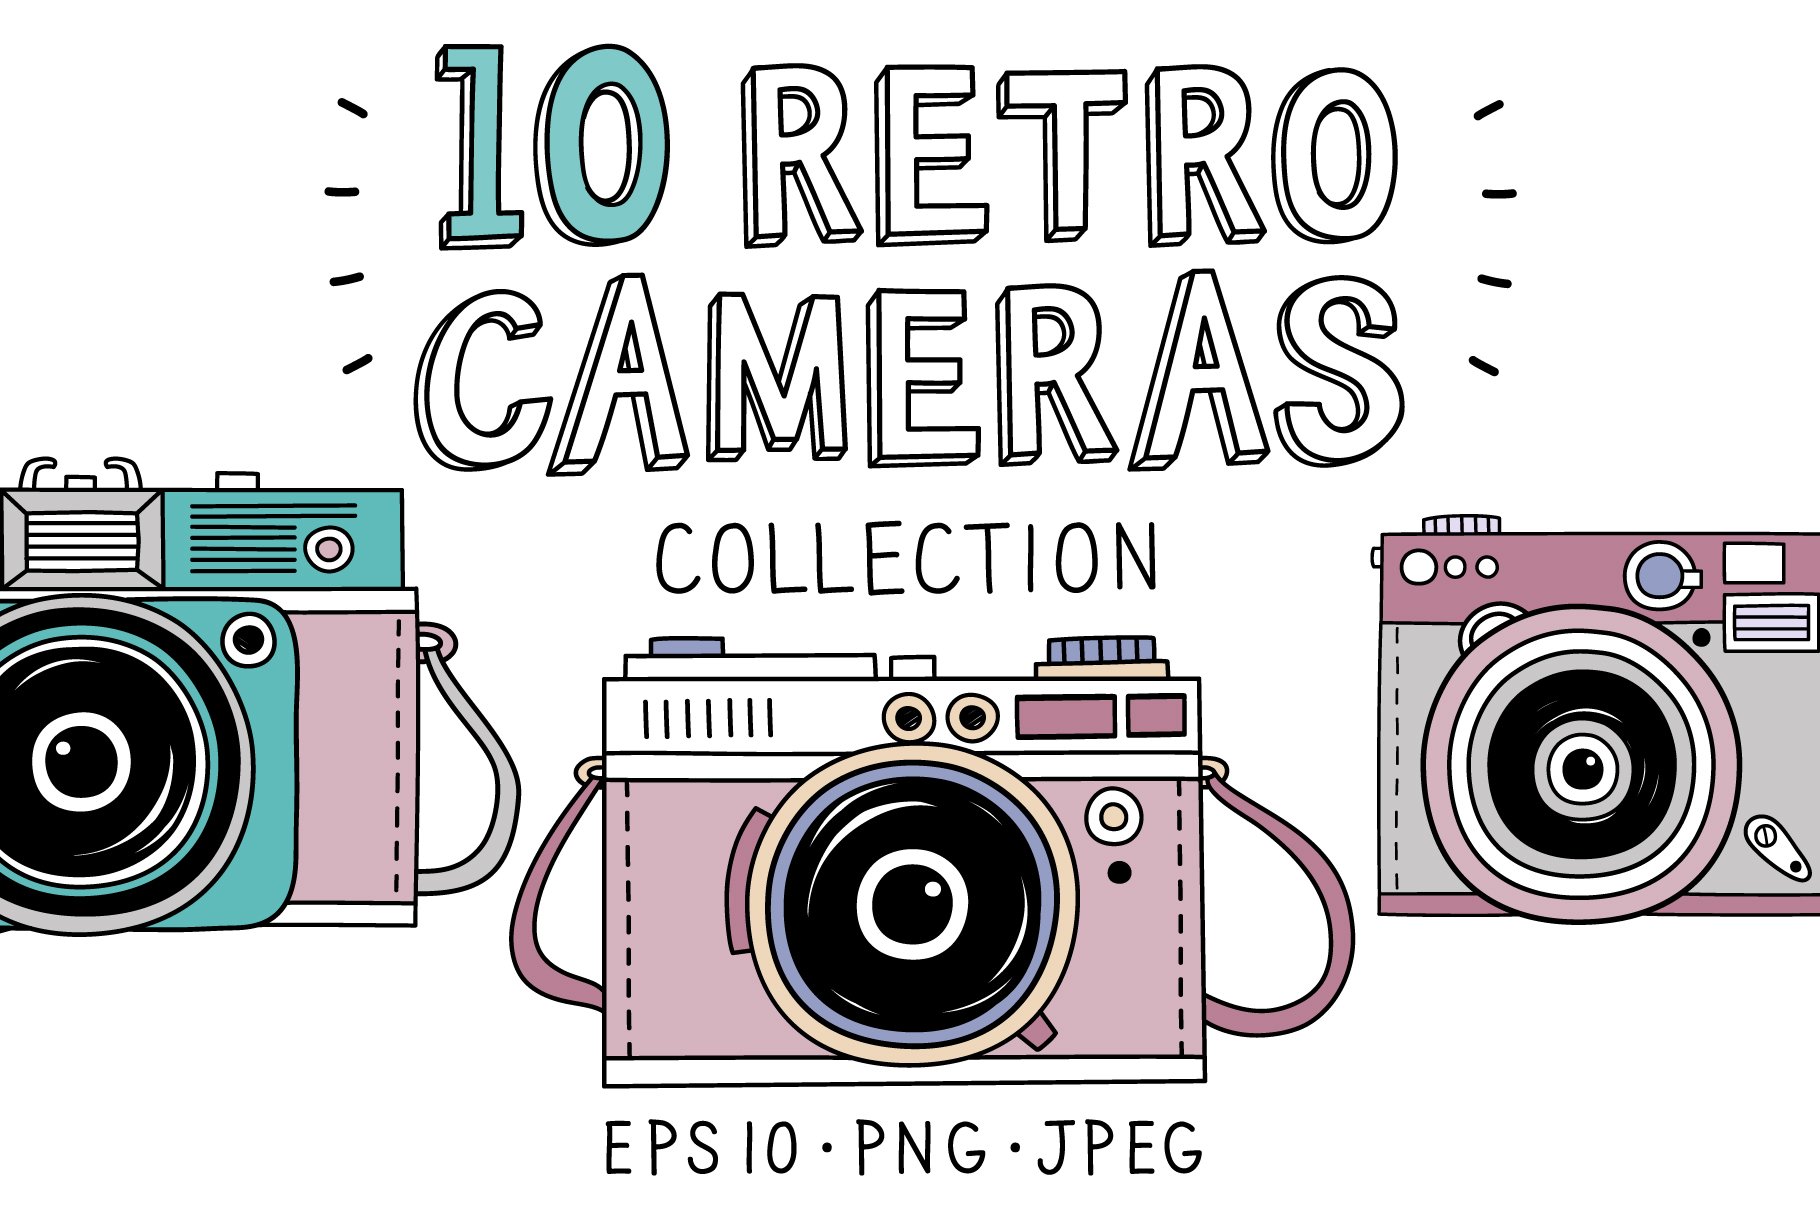 10 Retro photo cameras cover image.